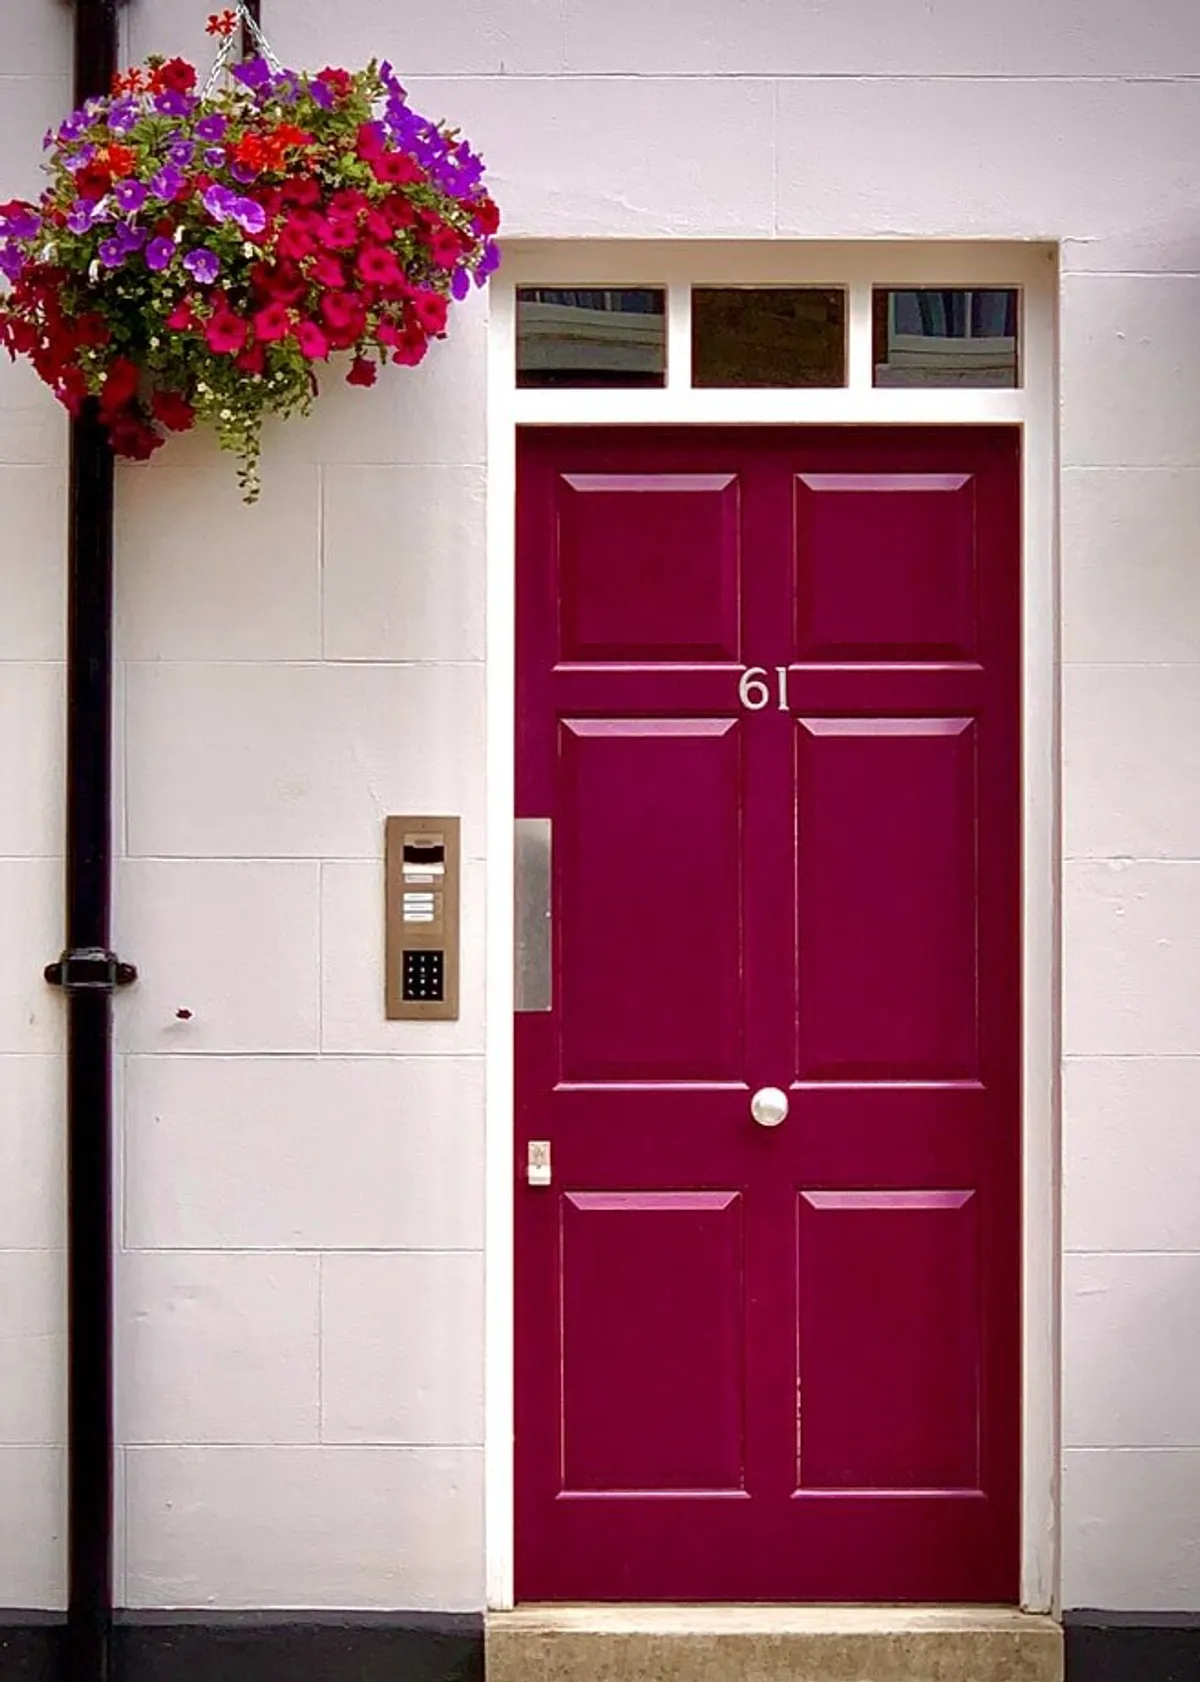 Fachada de una vivienda con una puerta roja y un intercomunicador. | Foto: Unsplash